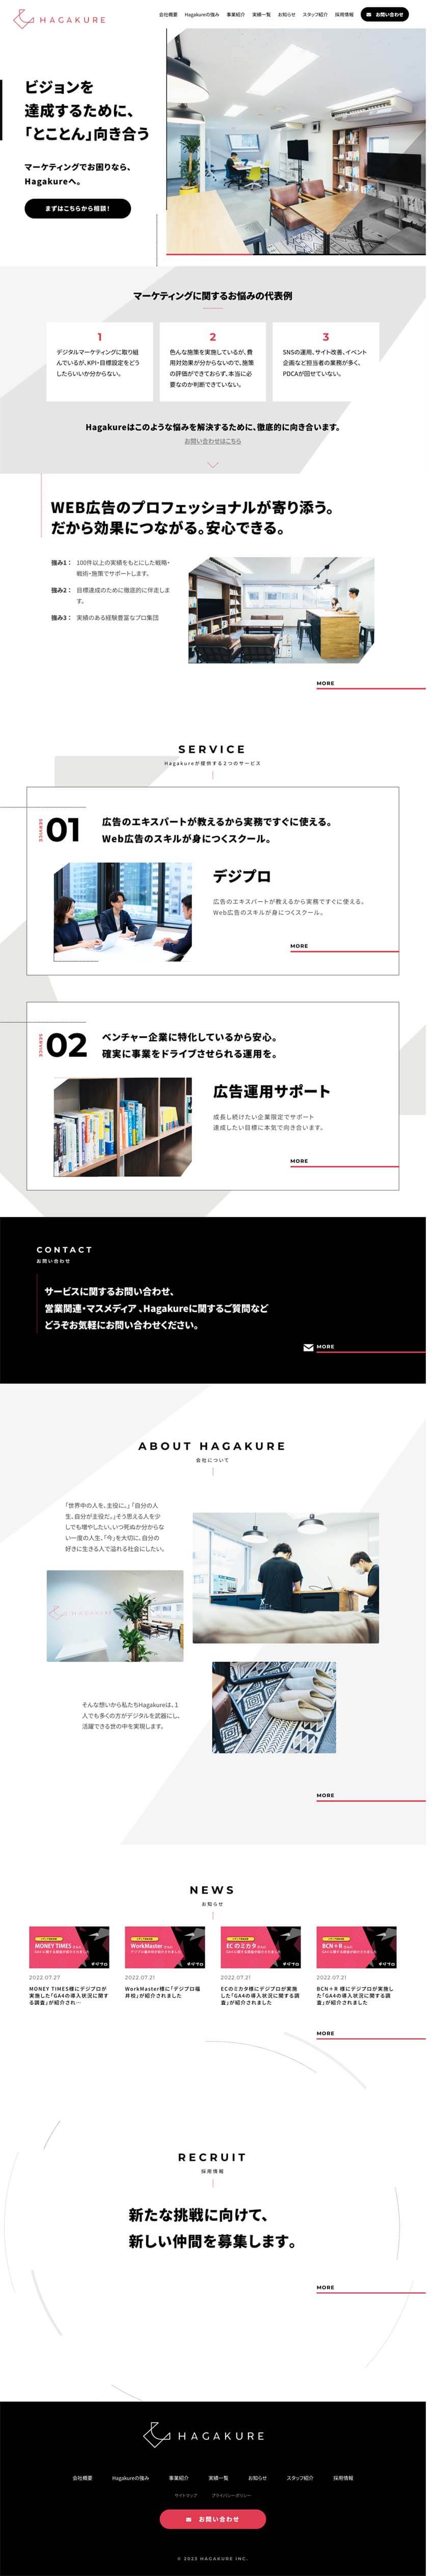 株式会社Hagakure様のPCサイト画像